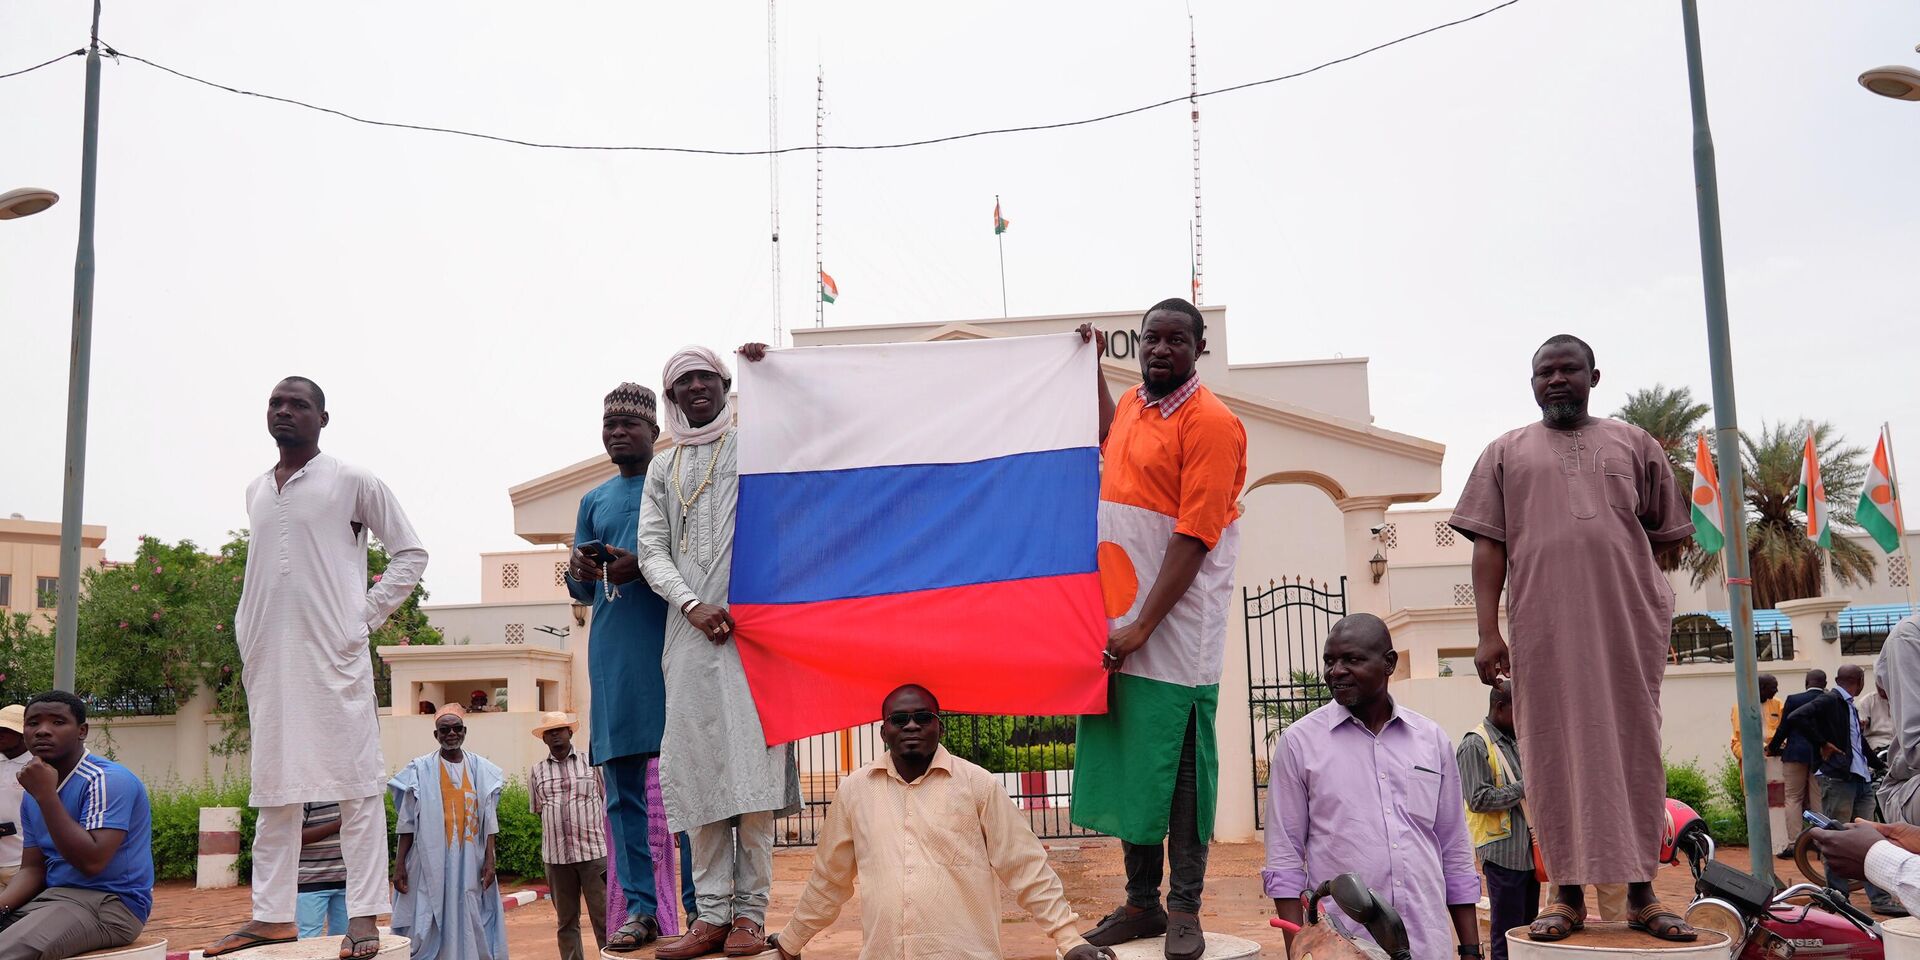 Участники демонстрации в Ниамее, Нигер. 27 июля 2023 года - ИноСМИ, 1920, 31.07.2023